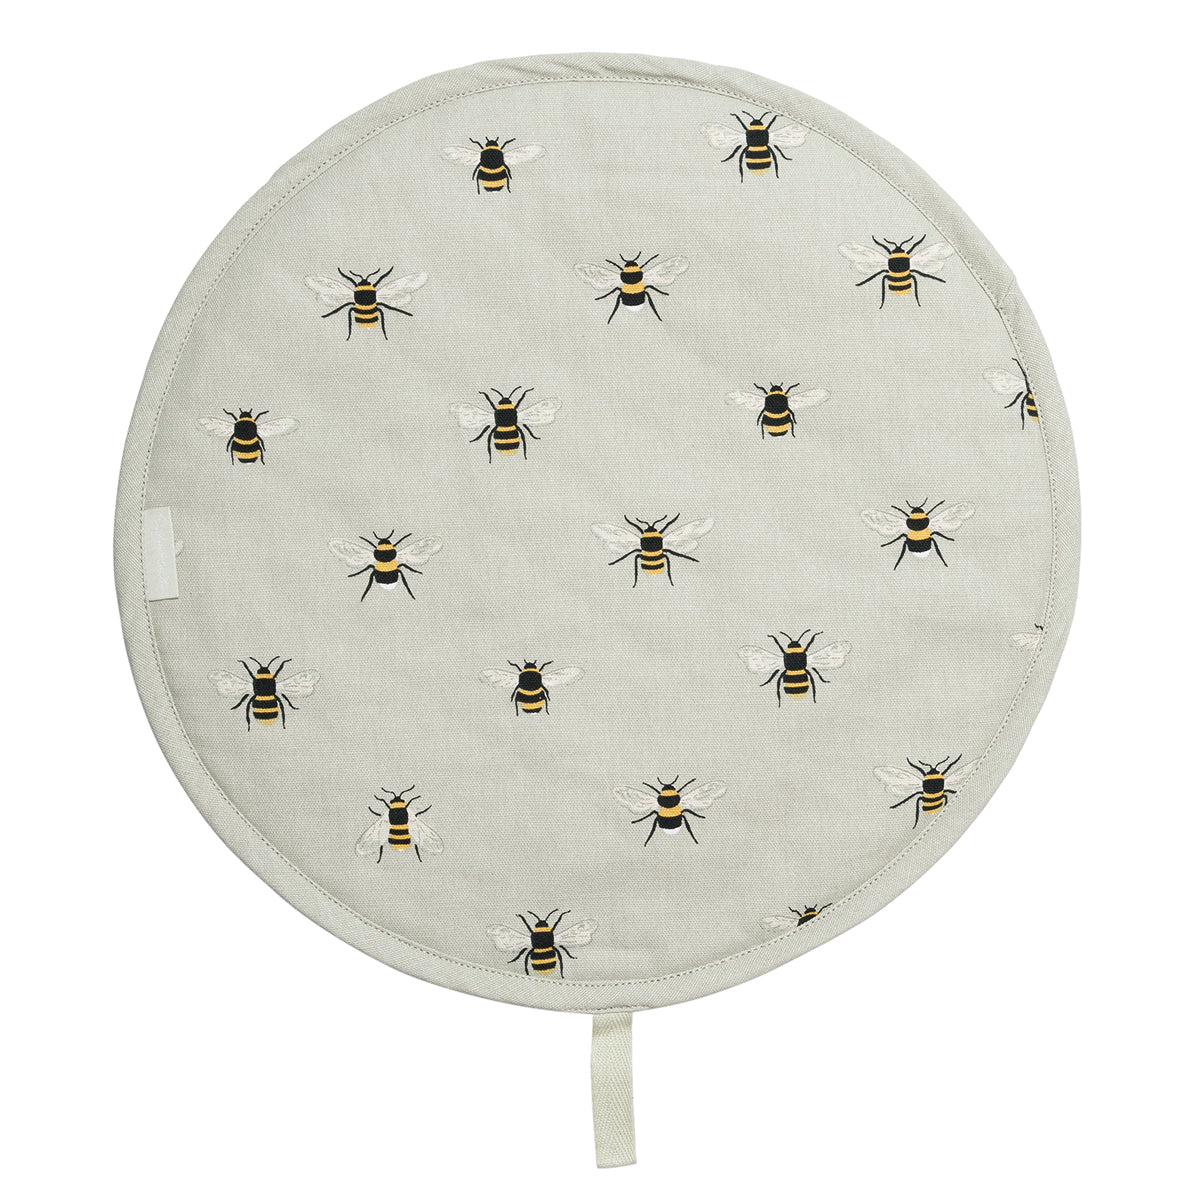 Bees Circular Hob Cover